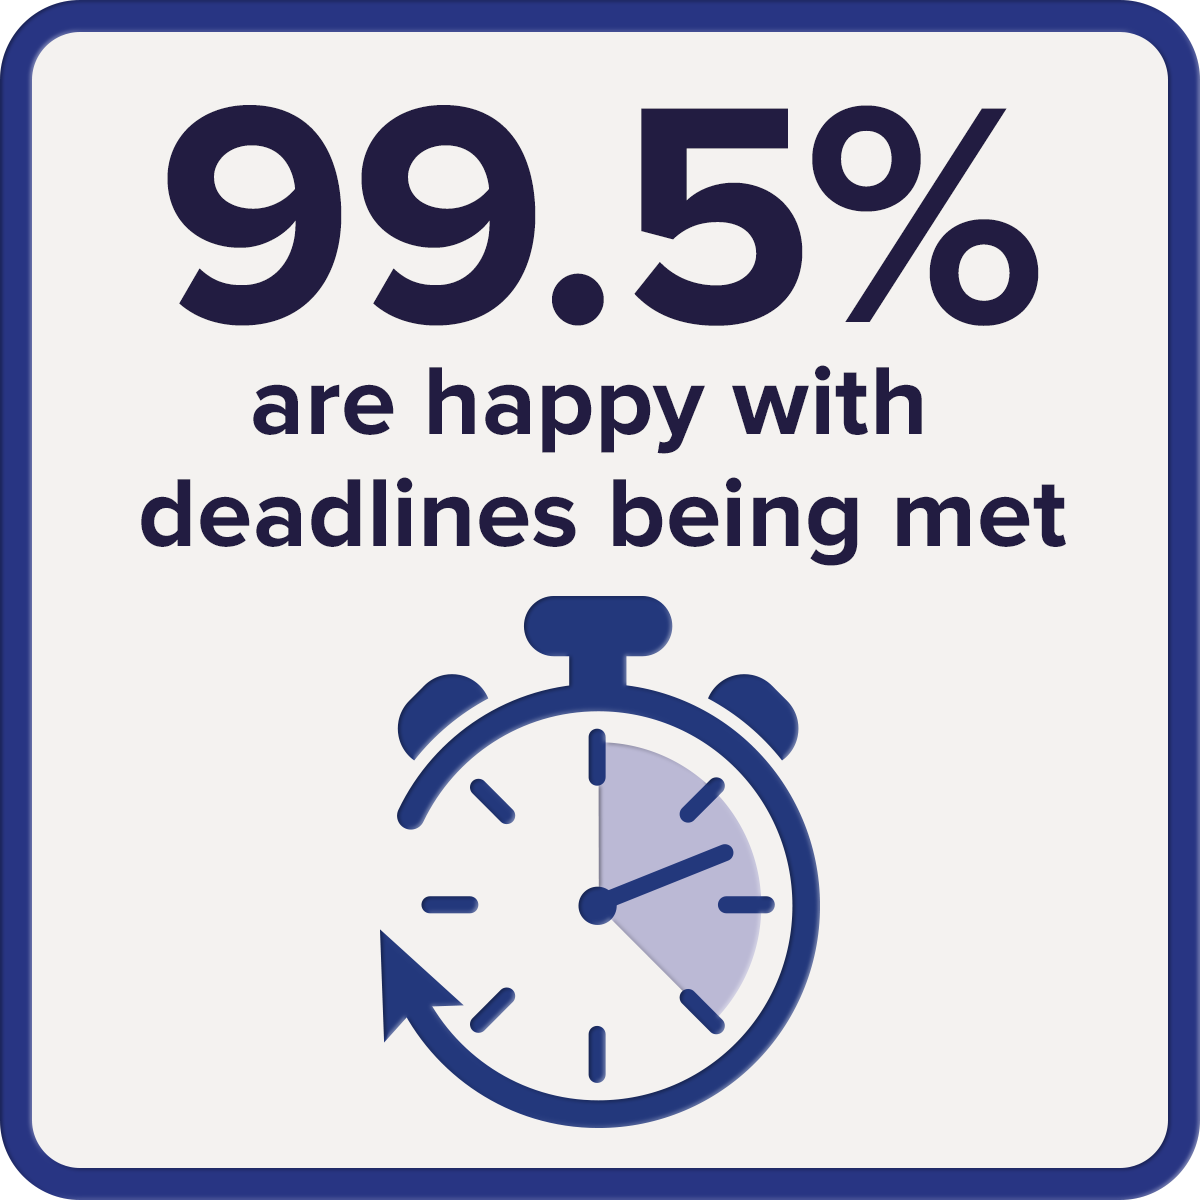 99.5% happy with deadlines met